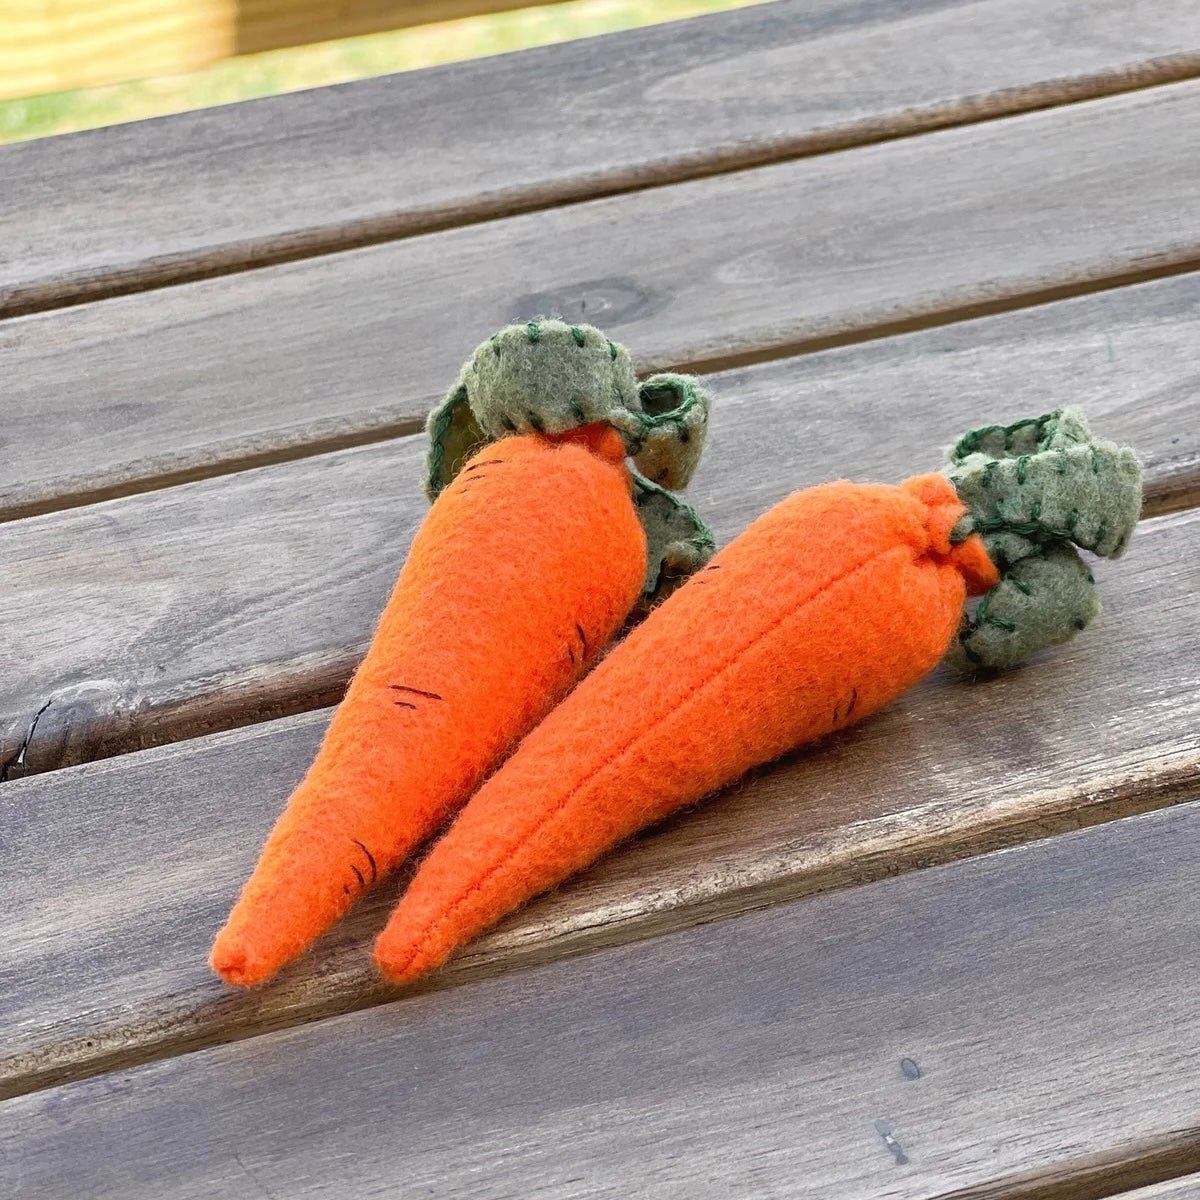 Felt Carrot Pair Handmade in USA